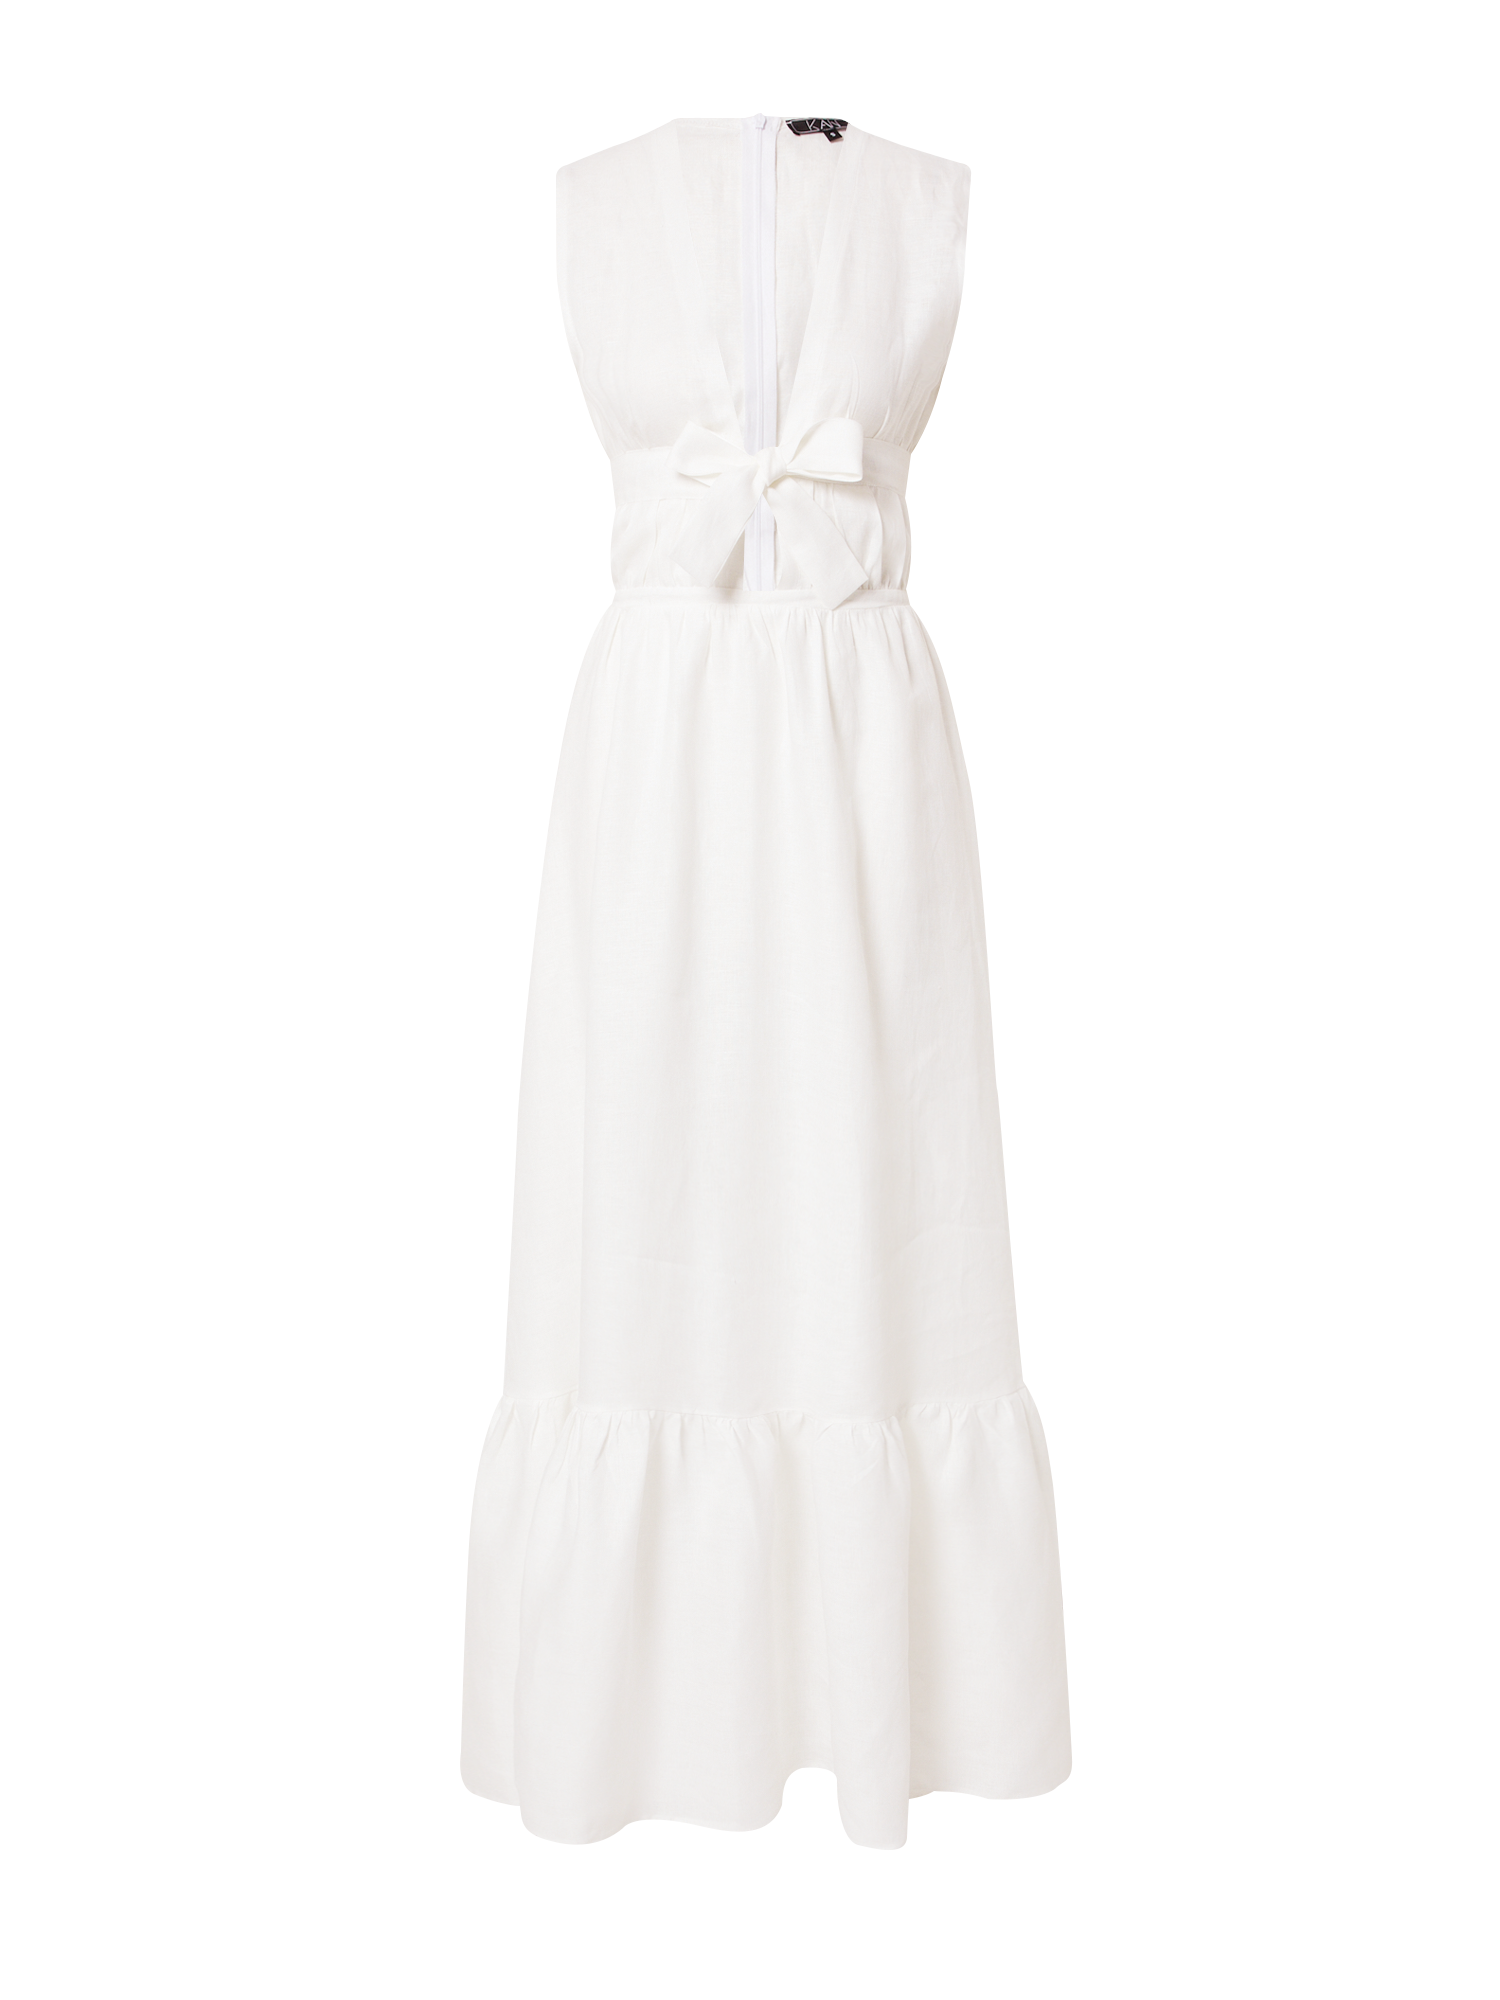 Kobiety Odzież KAN Letnia sukienka w kolorze Białym 